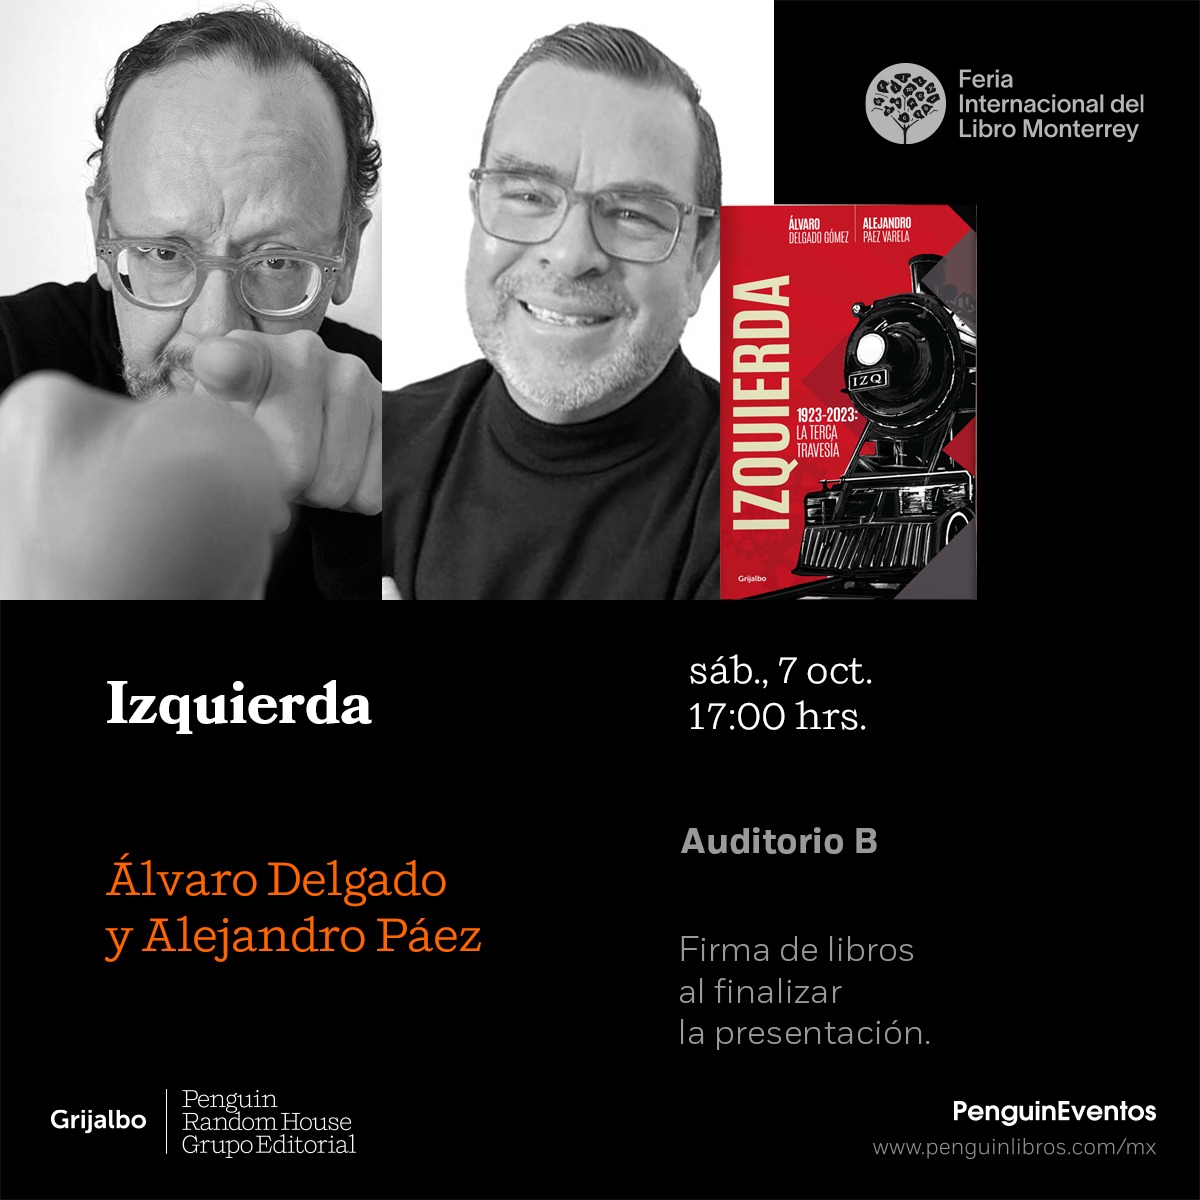 ¡Nos vemos en Monterrey este sábado! No se pierdan la presentación de IZQUIERDA, el nuevo libro de @alvaro_delgado y Alejandro @paezvarela.